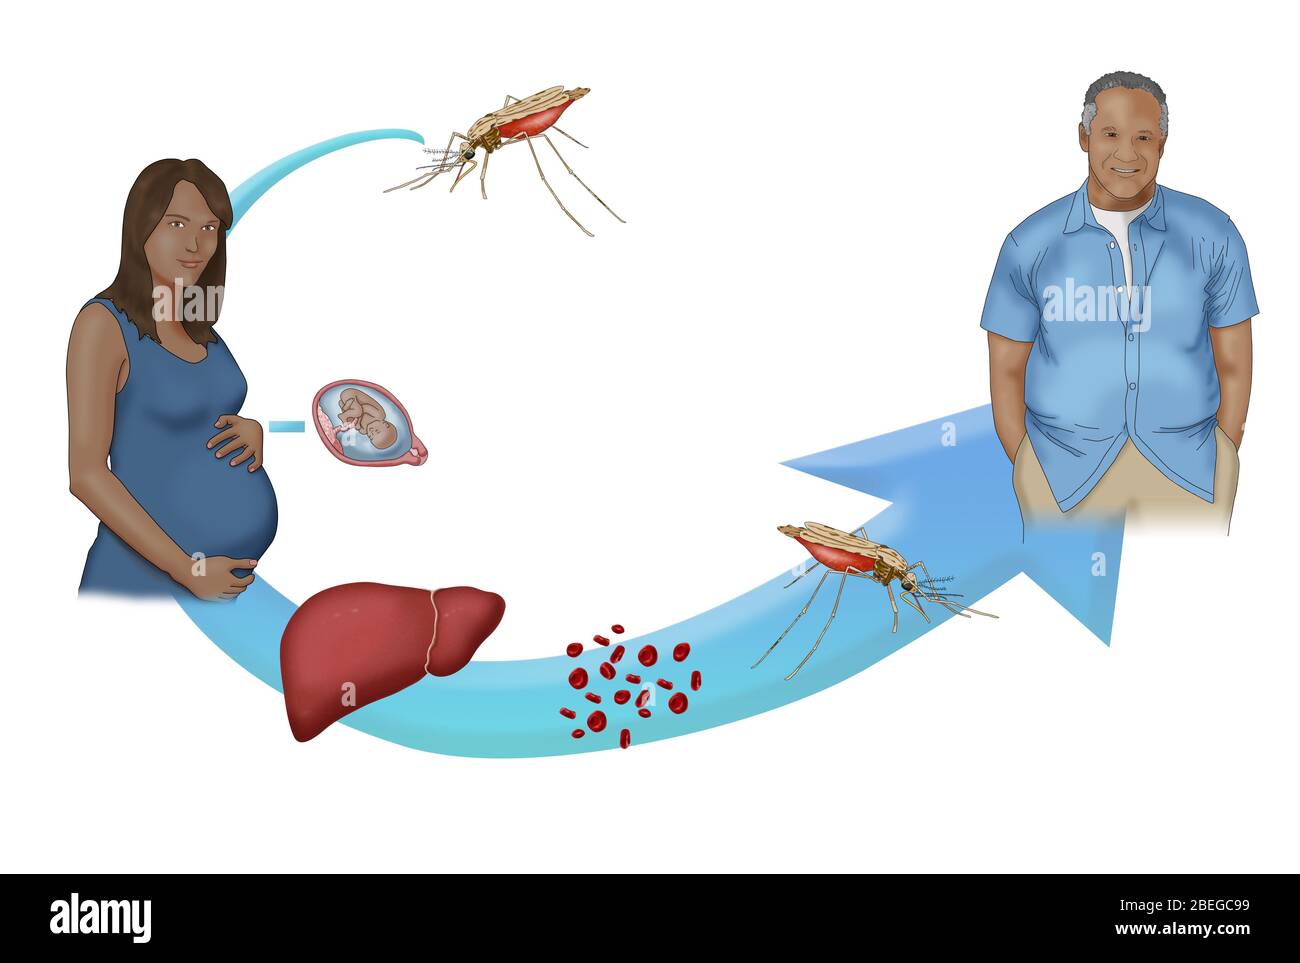 Une version simplifiée du cycle du paludisme. Le paludisme est une maladie à transmission vectorielle transmise par la piqûre de moustique d'Anopheles. Le paludisme peut également être transmis à un nourrisson pendant la naissance si la mère est infectée. Les moustiques acquièrent le parasite du paludisme en mordant une personne ou un animal infecté. Banque D'Images